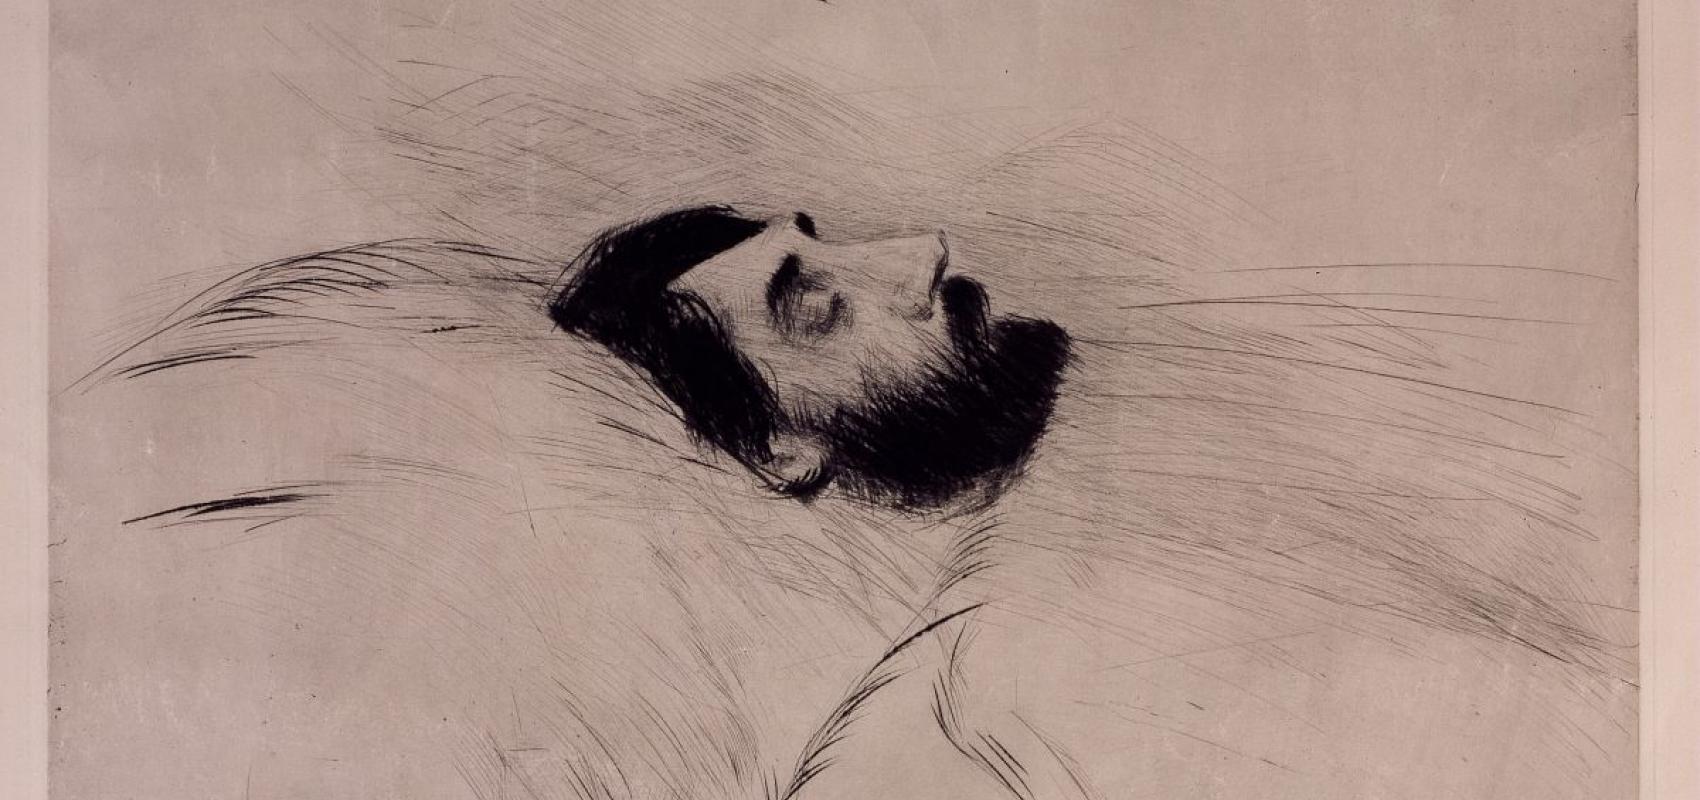 Marcel Proust sur son lit de mort, par Paul Helleu, pointe sèche, 1922. BnF, département des Estampes et de la photographie -  - BnF